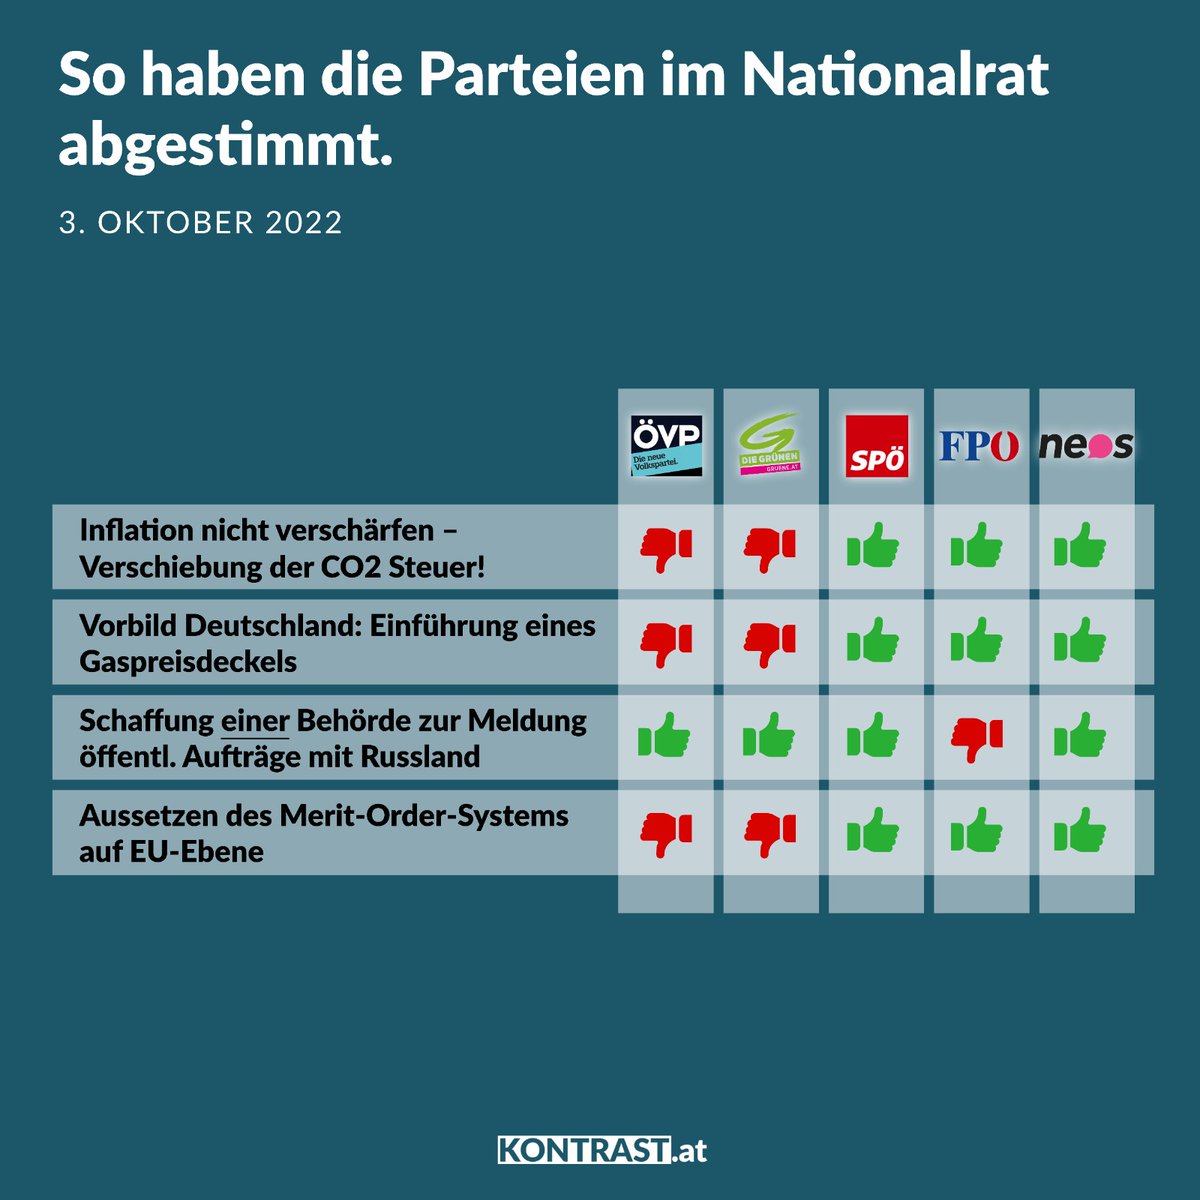 So haben die Parteien im Nationalrat abgestimmt! Mehr dazu: kontrast.at/nationalrat-ab…